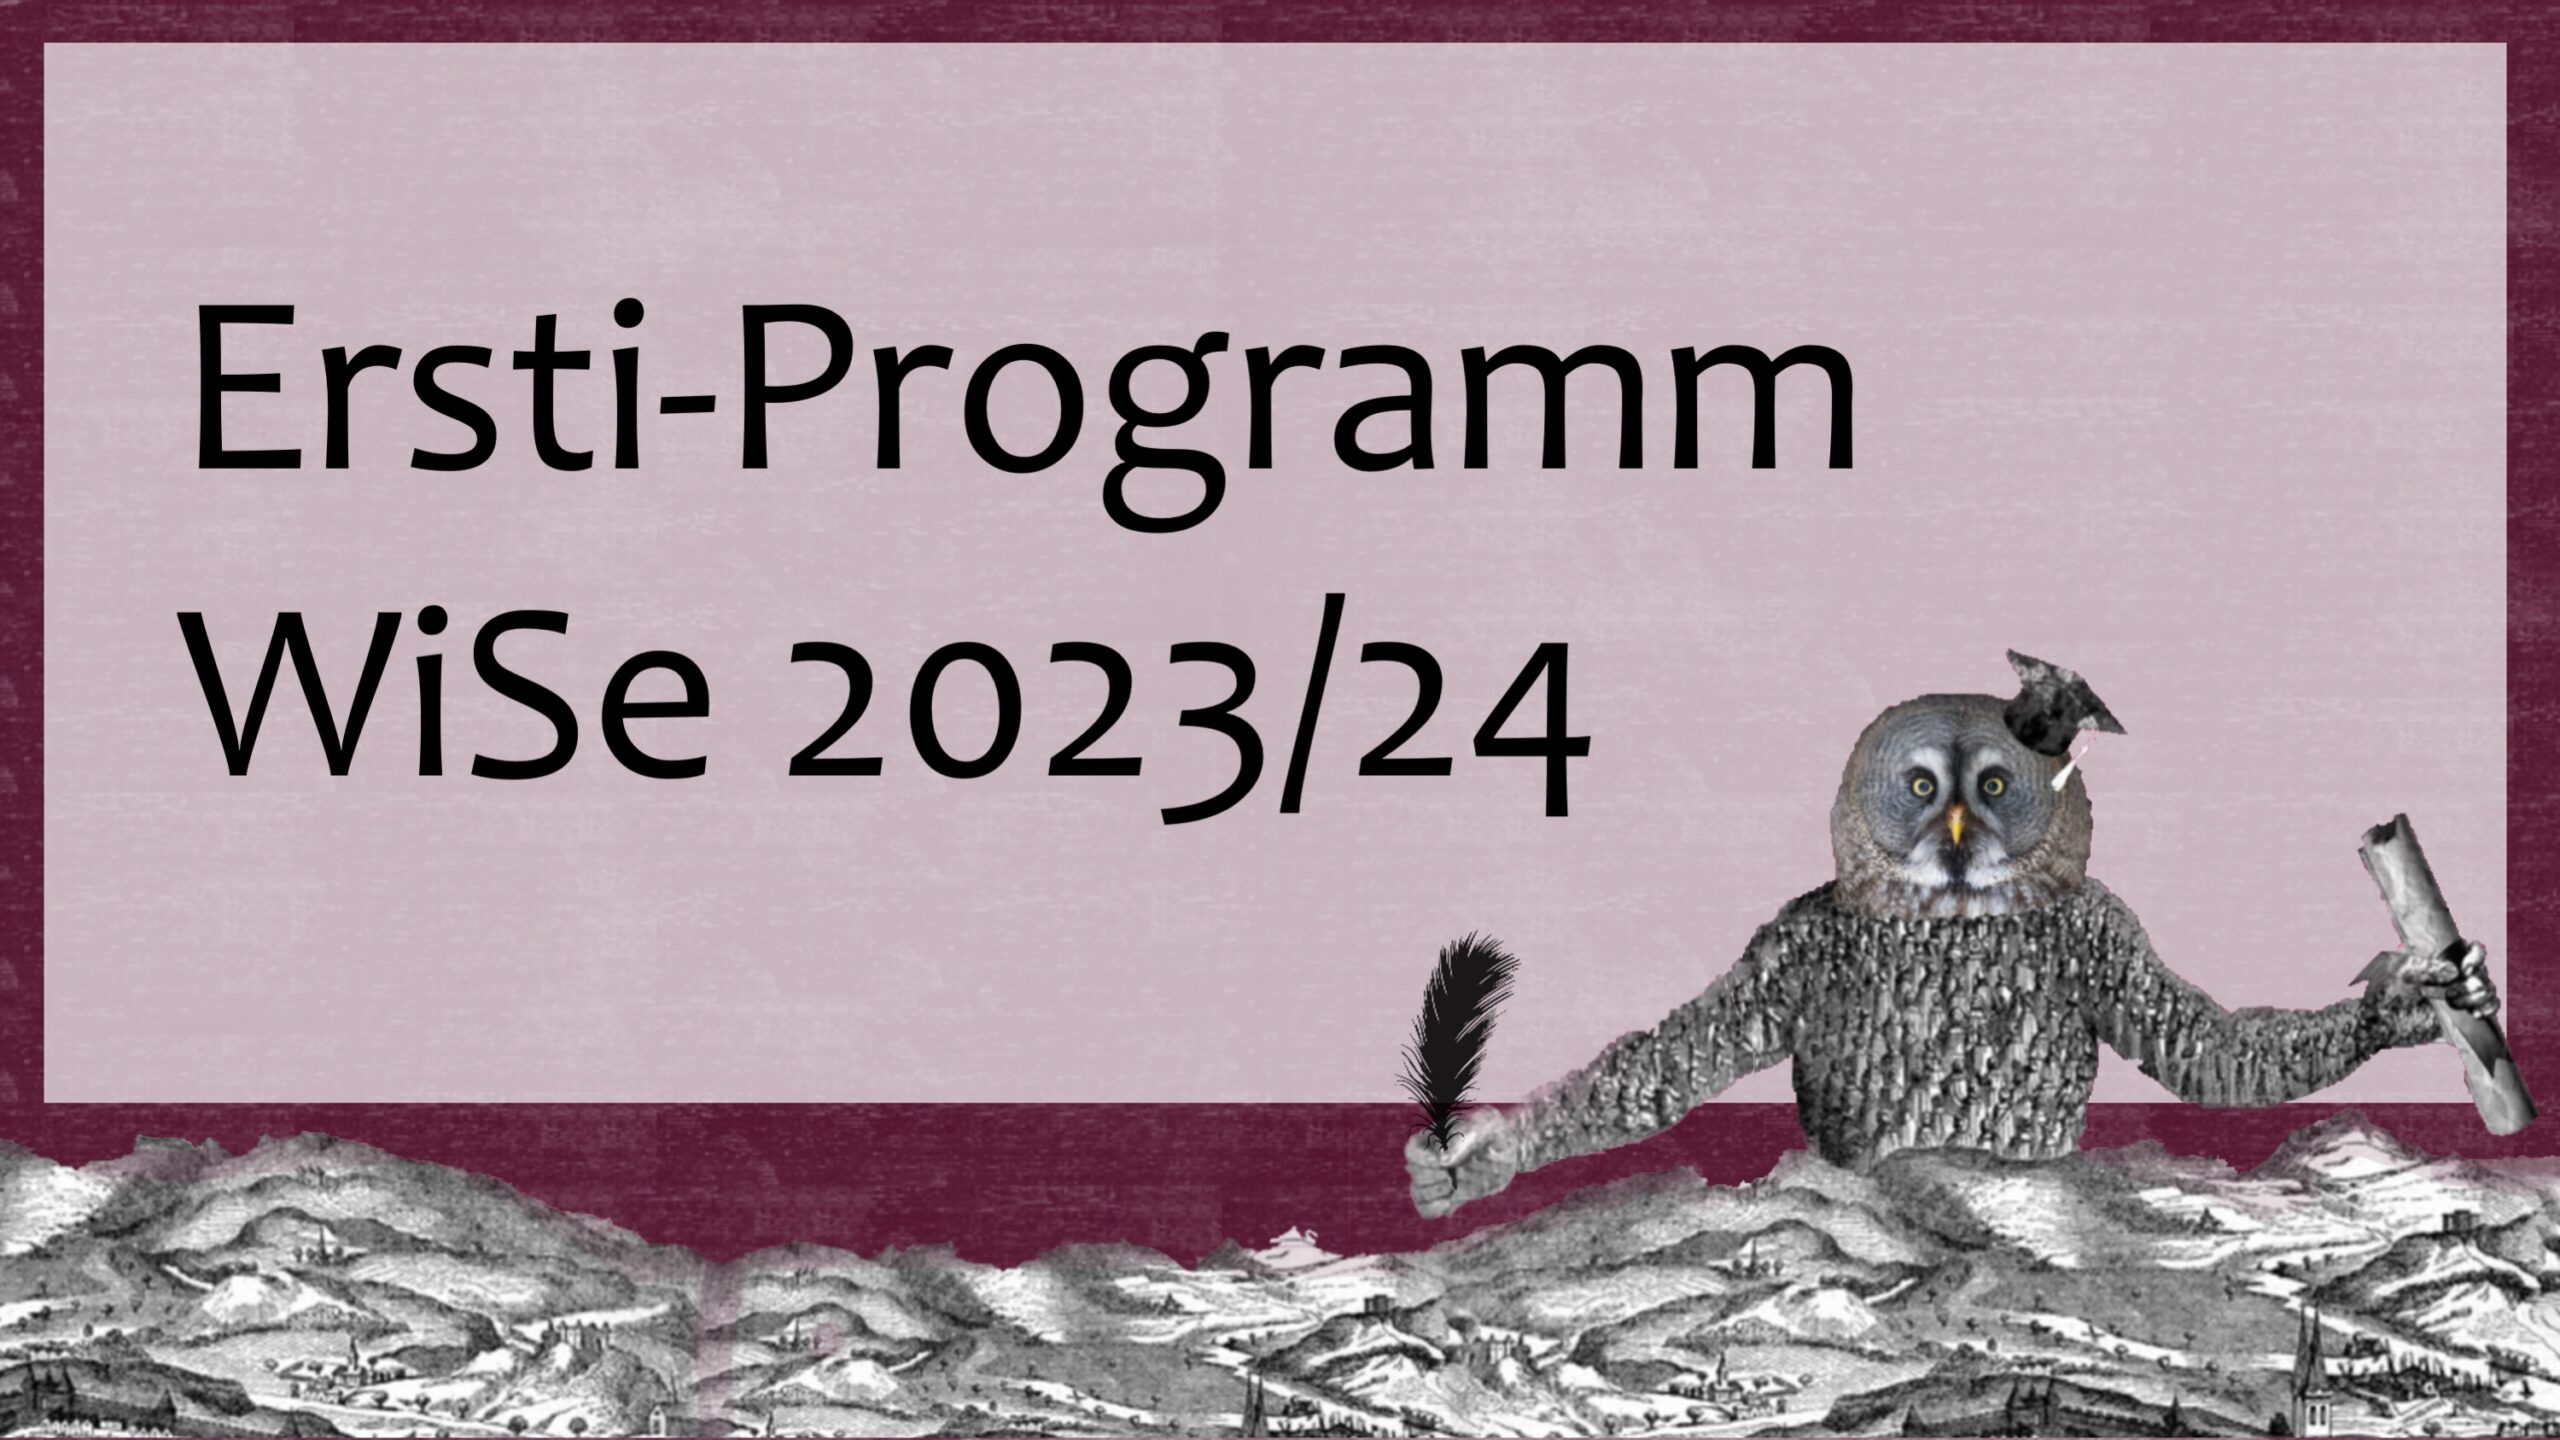 Ersti-Programm WiSe 2023/24